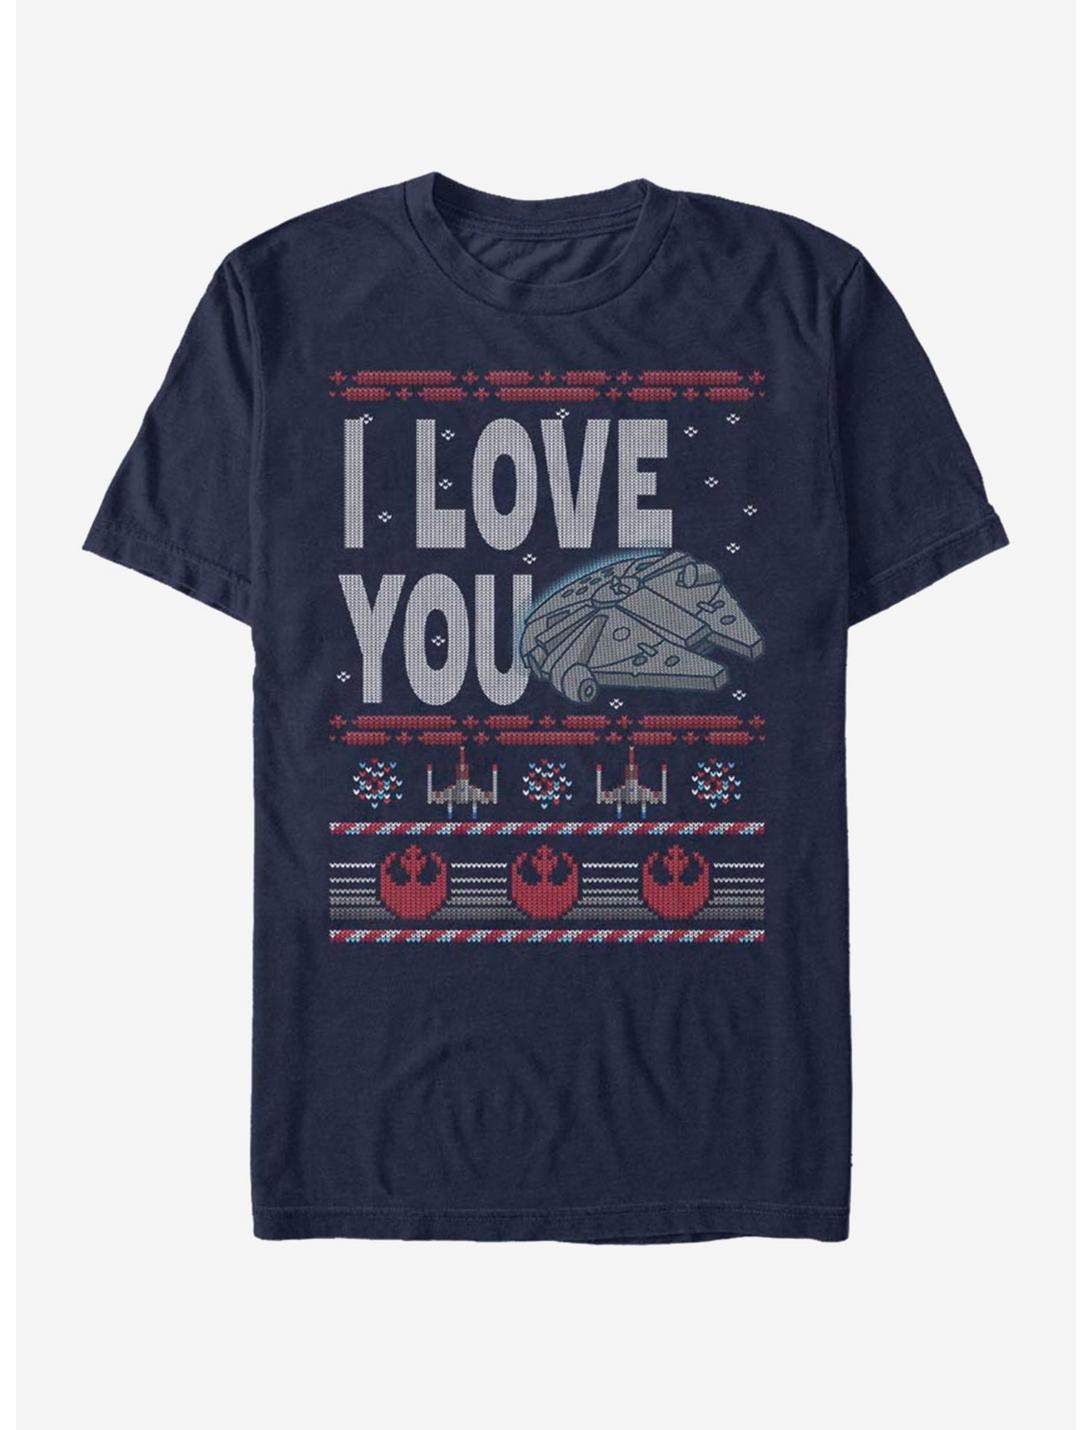 Star Wars Ugly Love T-Shirt, NAVY, hi-res